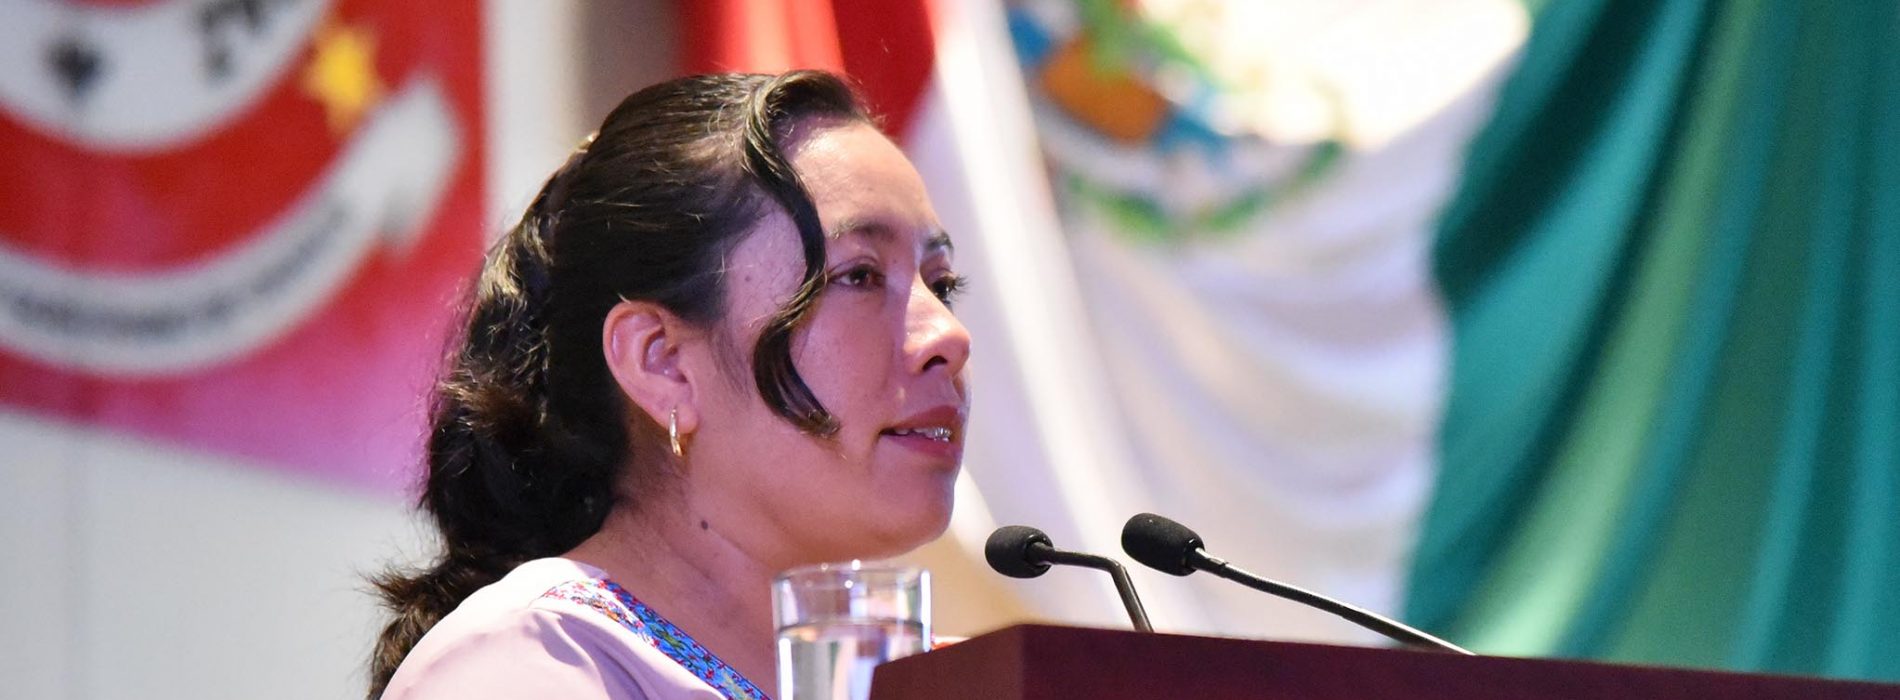 Propone diputada Arcelia López Hernández reformas a Ley Estatal de Salud para combatir mala nutrición